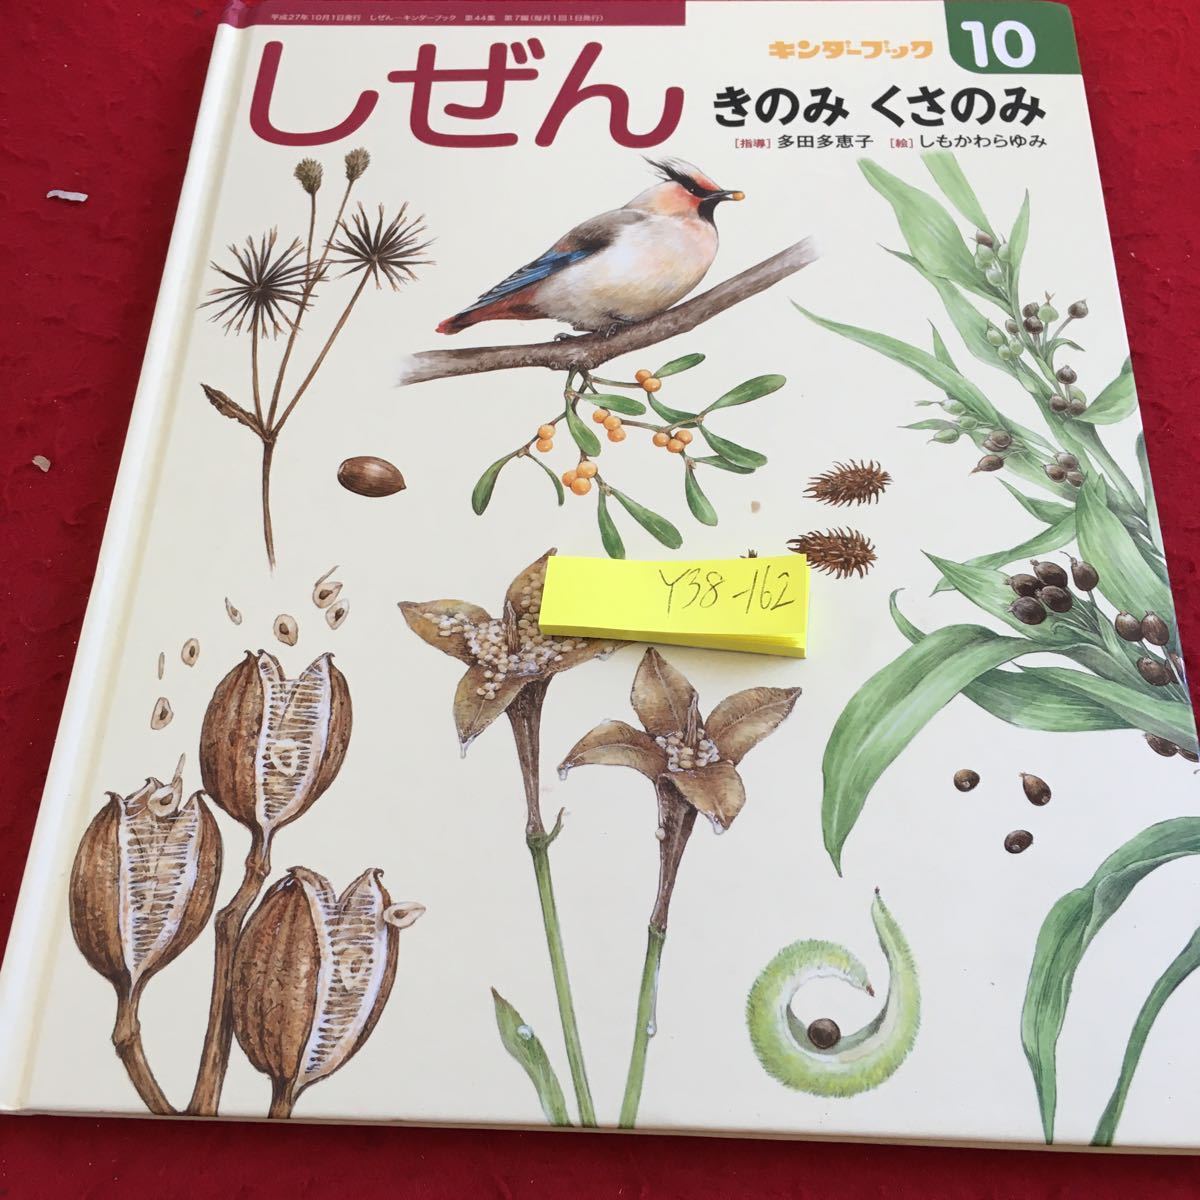 Y38-162... gold da- книжка 10. только .. только руководство много рисовое поле много .......... эпоха Heisei 27 год выпуск f этикетка павильон осень животное растения 